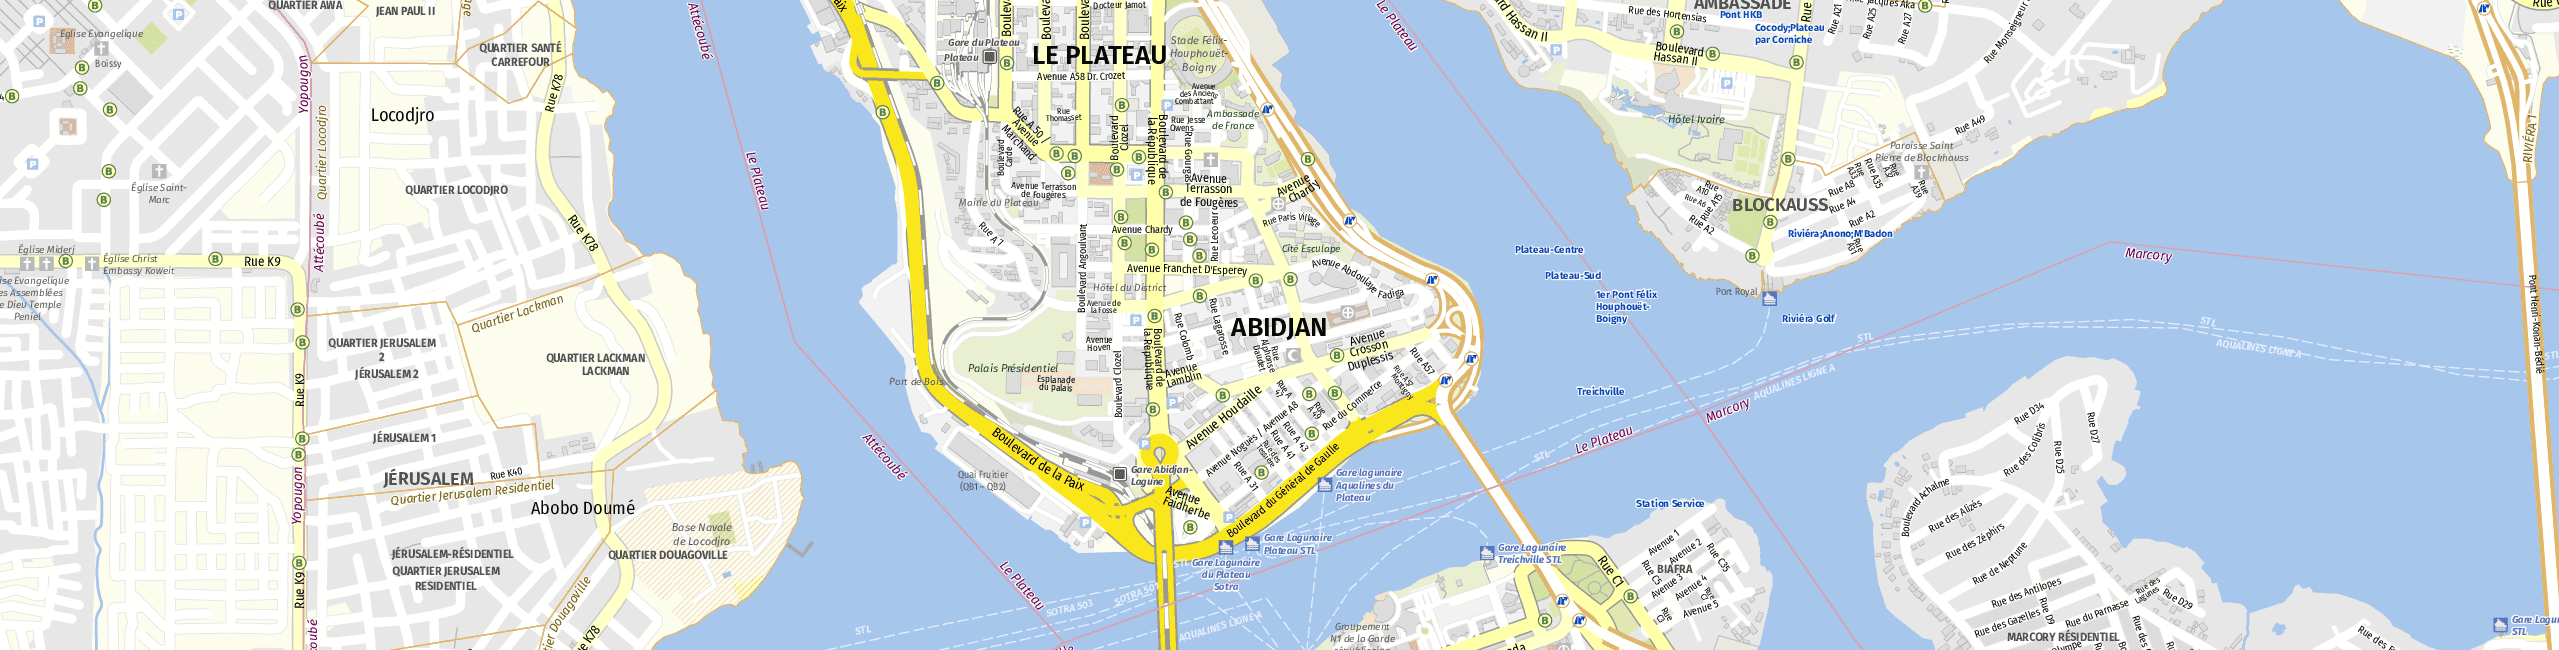 Stadtplan Abidjan zum Downloaden.